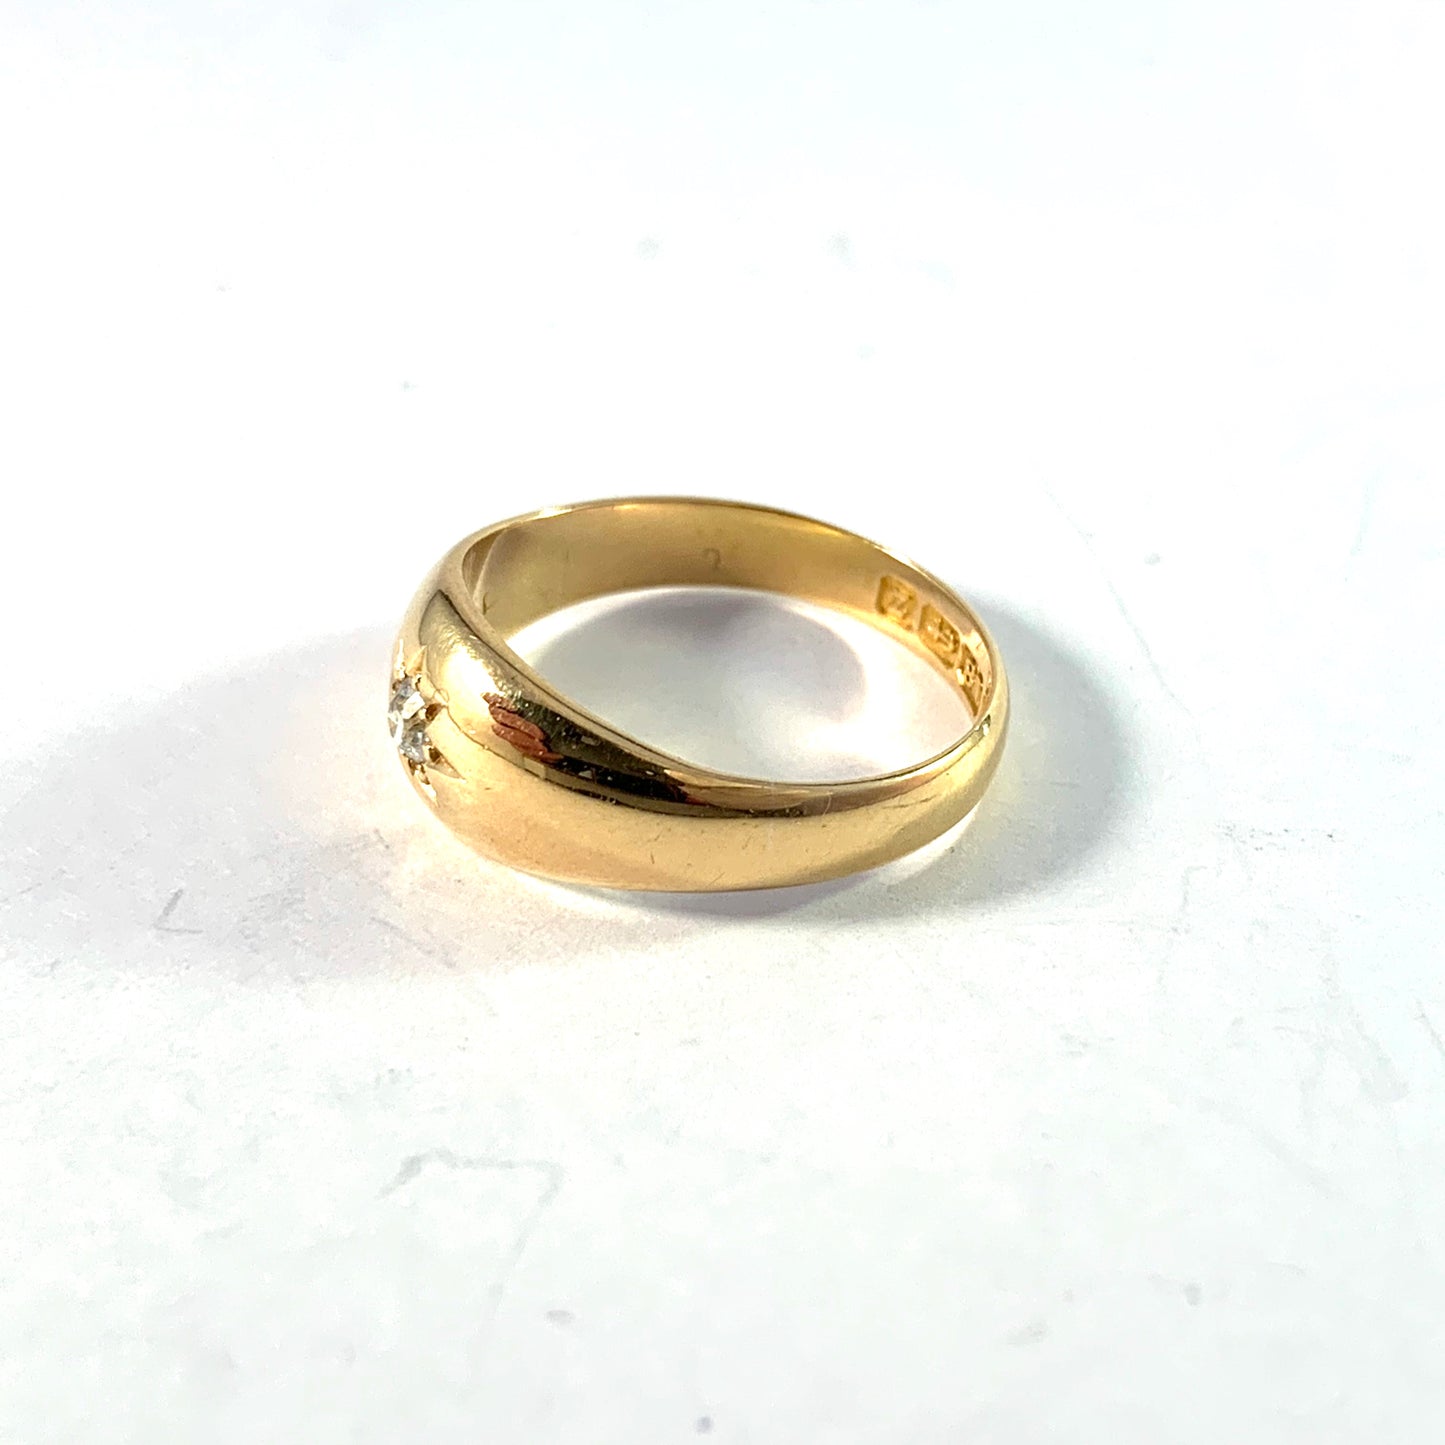 EJ Clewley & Co, Birmingham 1899. Victorian 18k Gold Diamond Gypsy Ring.